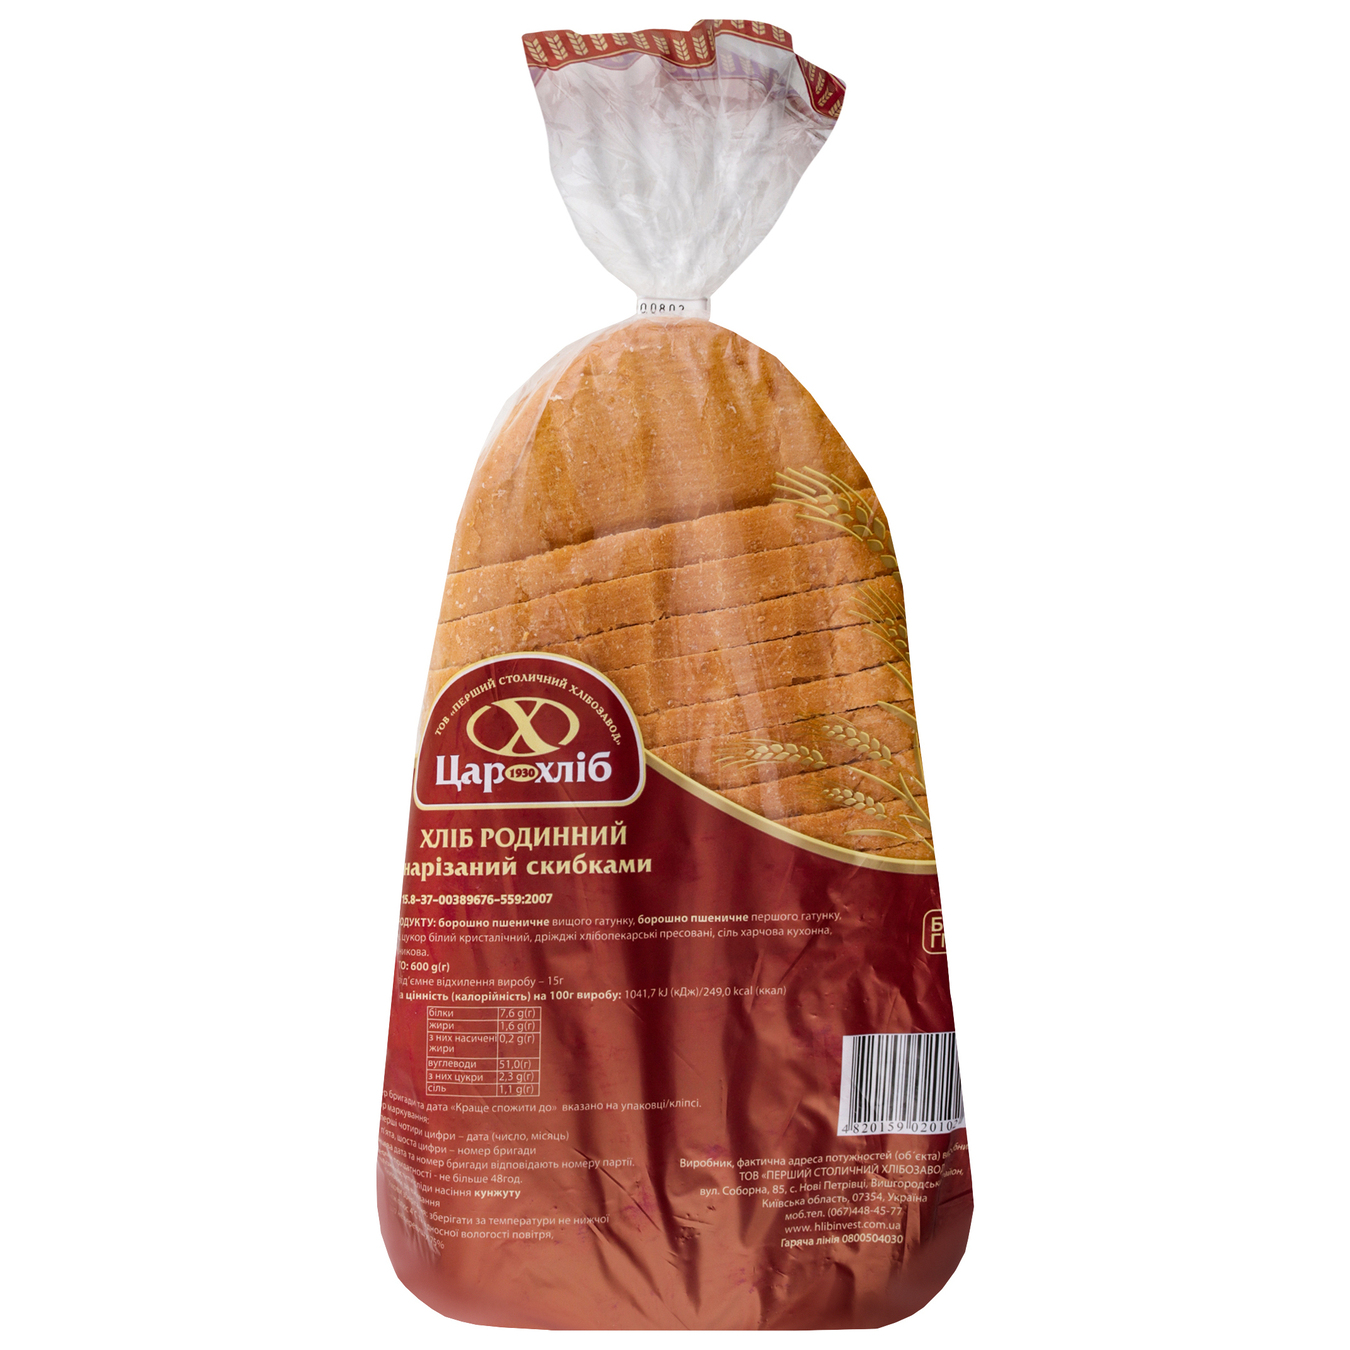 Хлеб Царь Хлеб Семейный пшеничный нарезка 600г 3